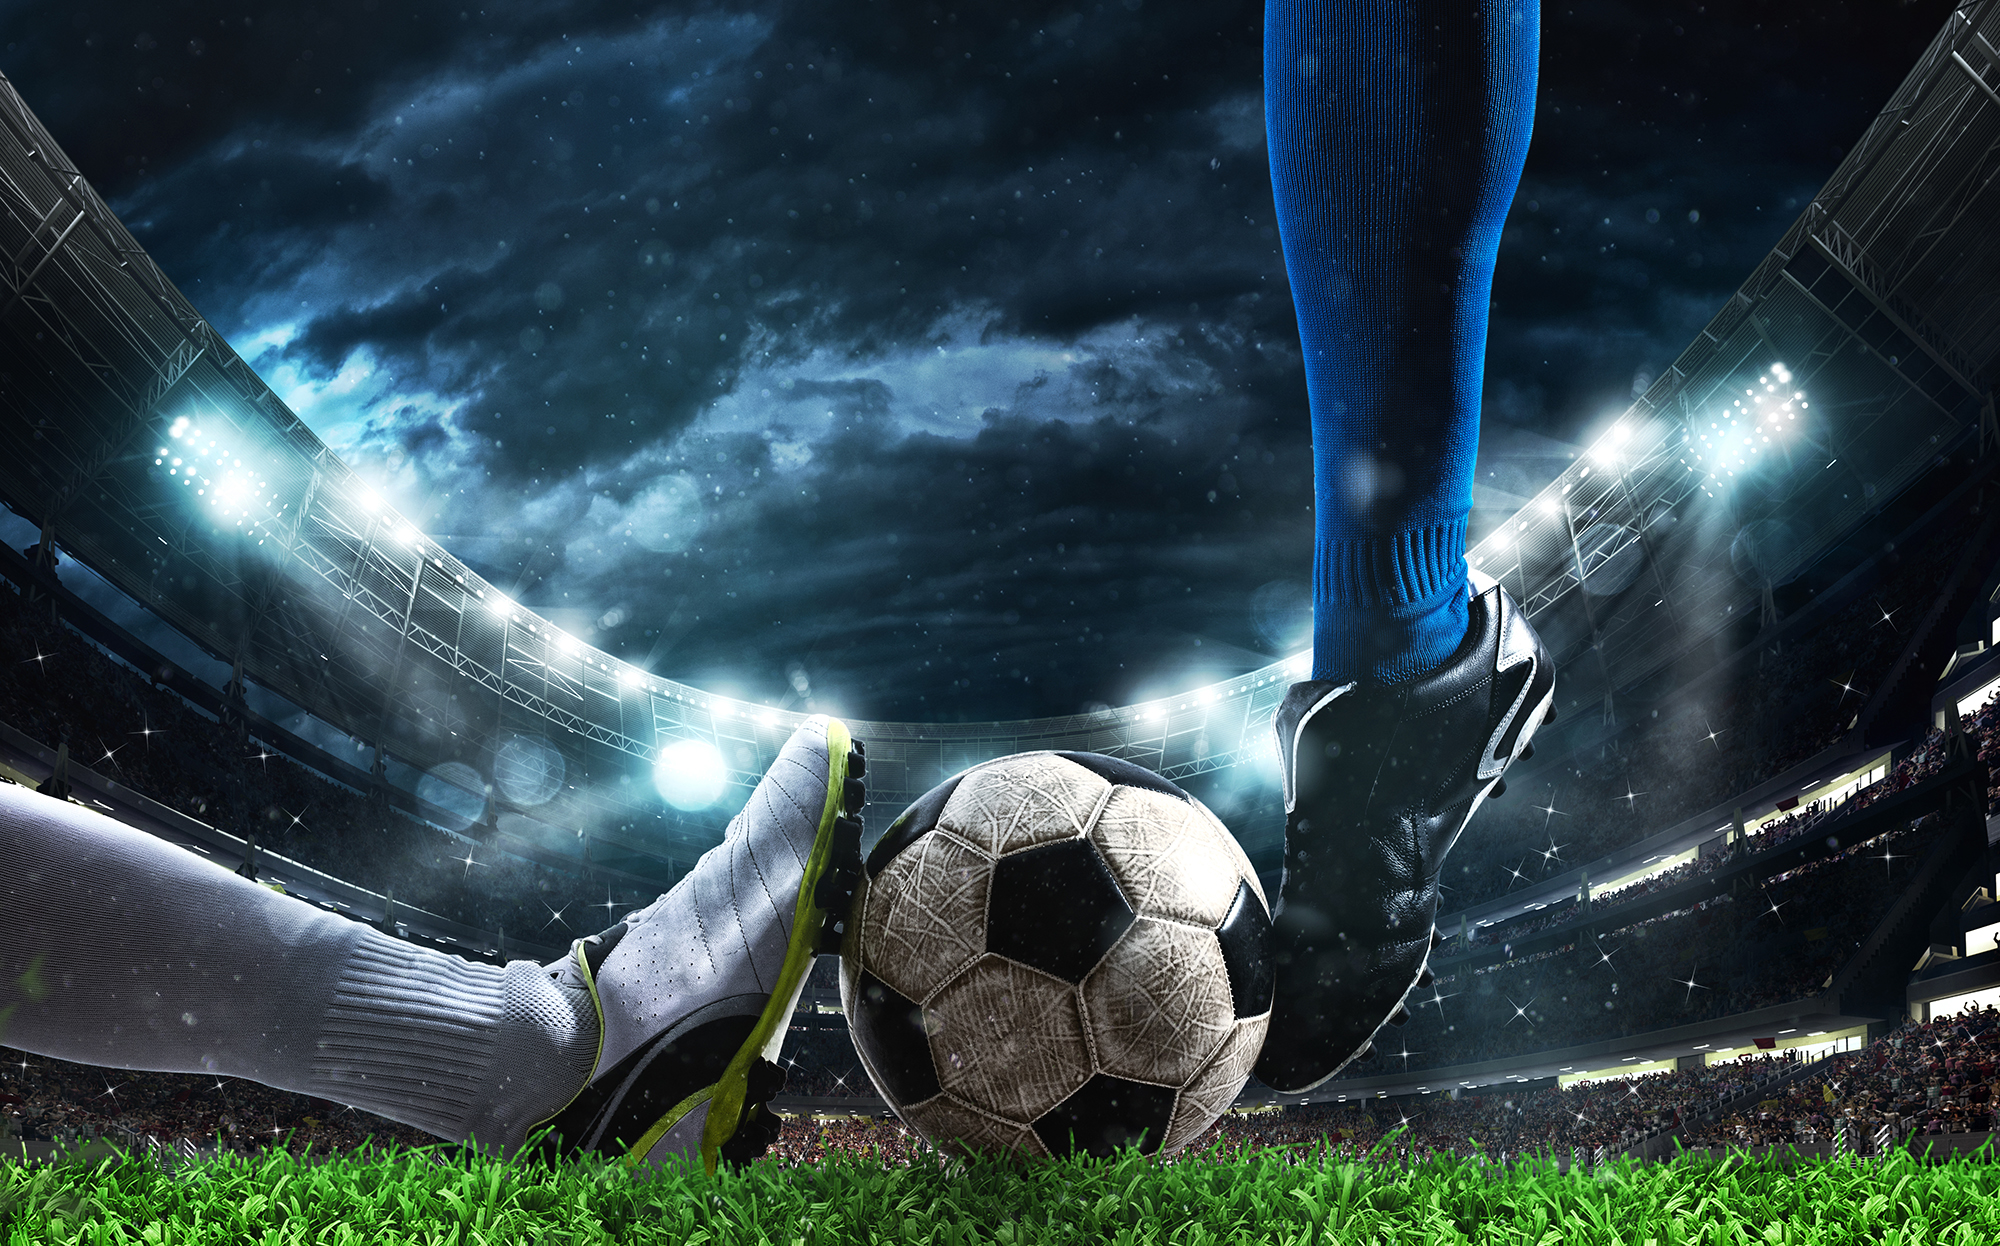 Illustrasjon. Nærbilde av en fotball som ligger på en gressmatte, to ben, med forskjellige fotballsko prøver fra hver sin kant å bevege ballen. I bakgrunnen ser man tribunene på fotballstadion. himmelen er mørk